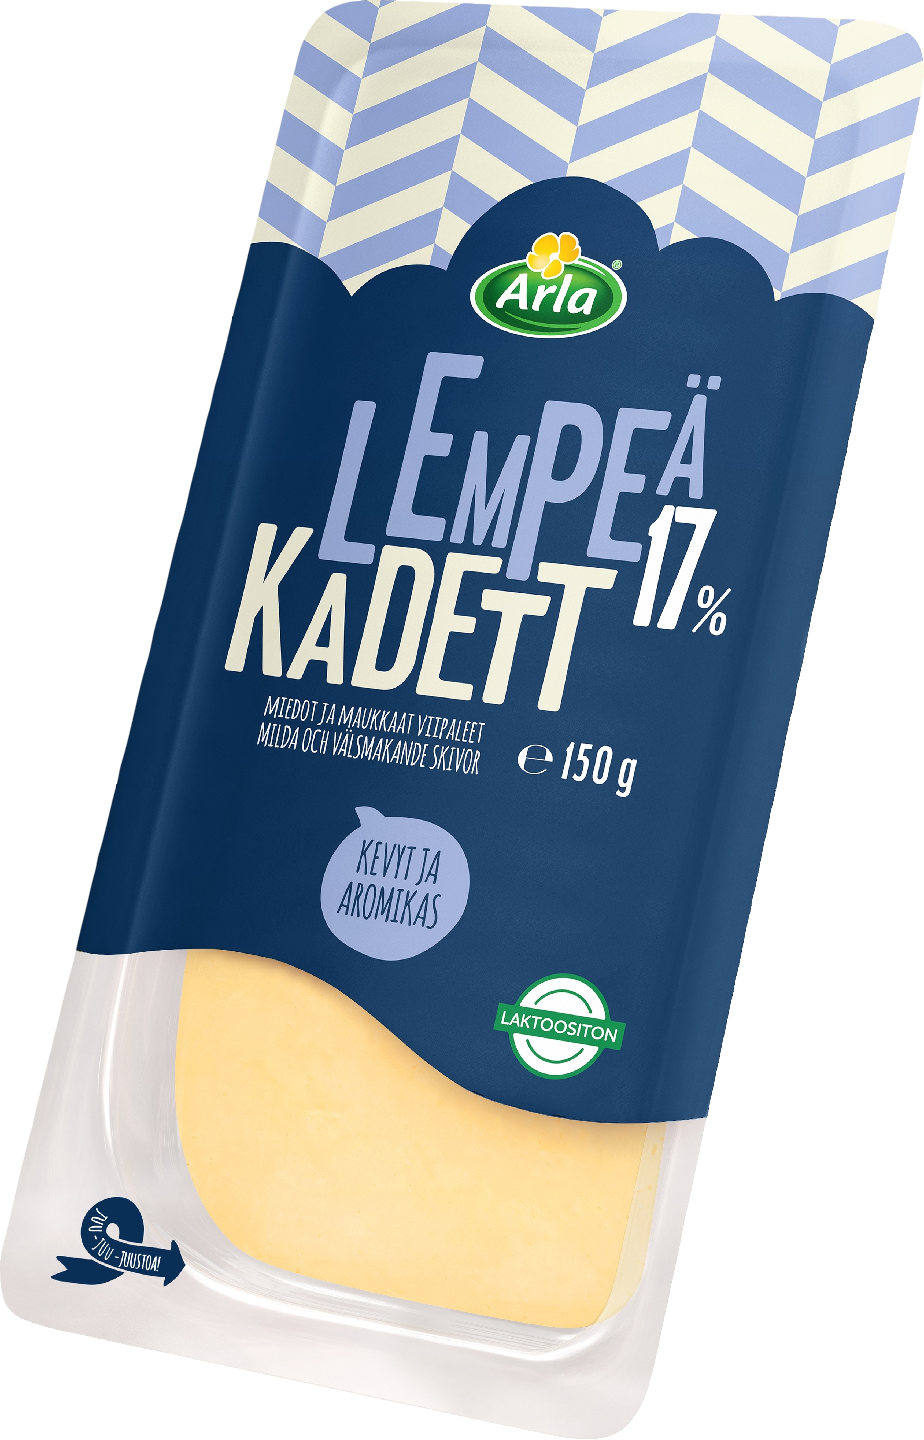 Arla Lempeä Kadett 17% viipale 150 g